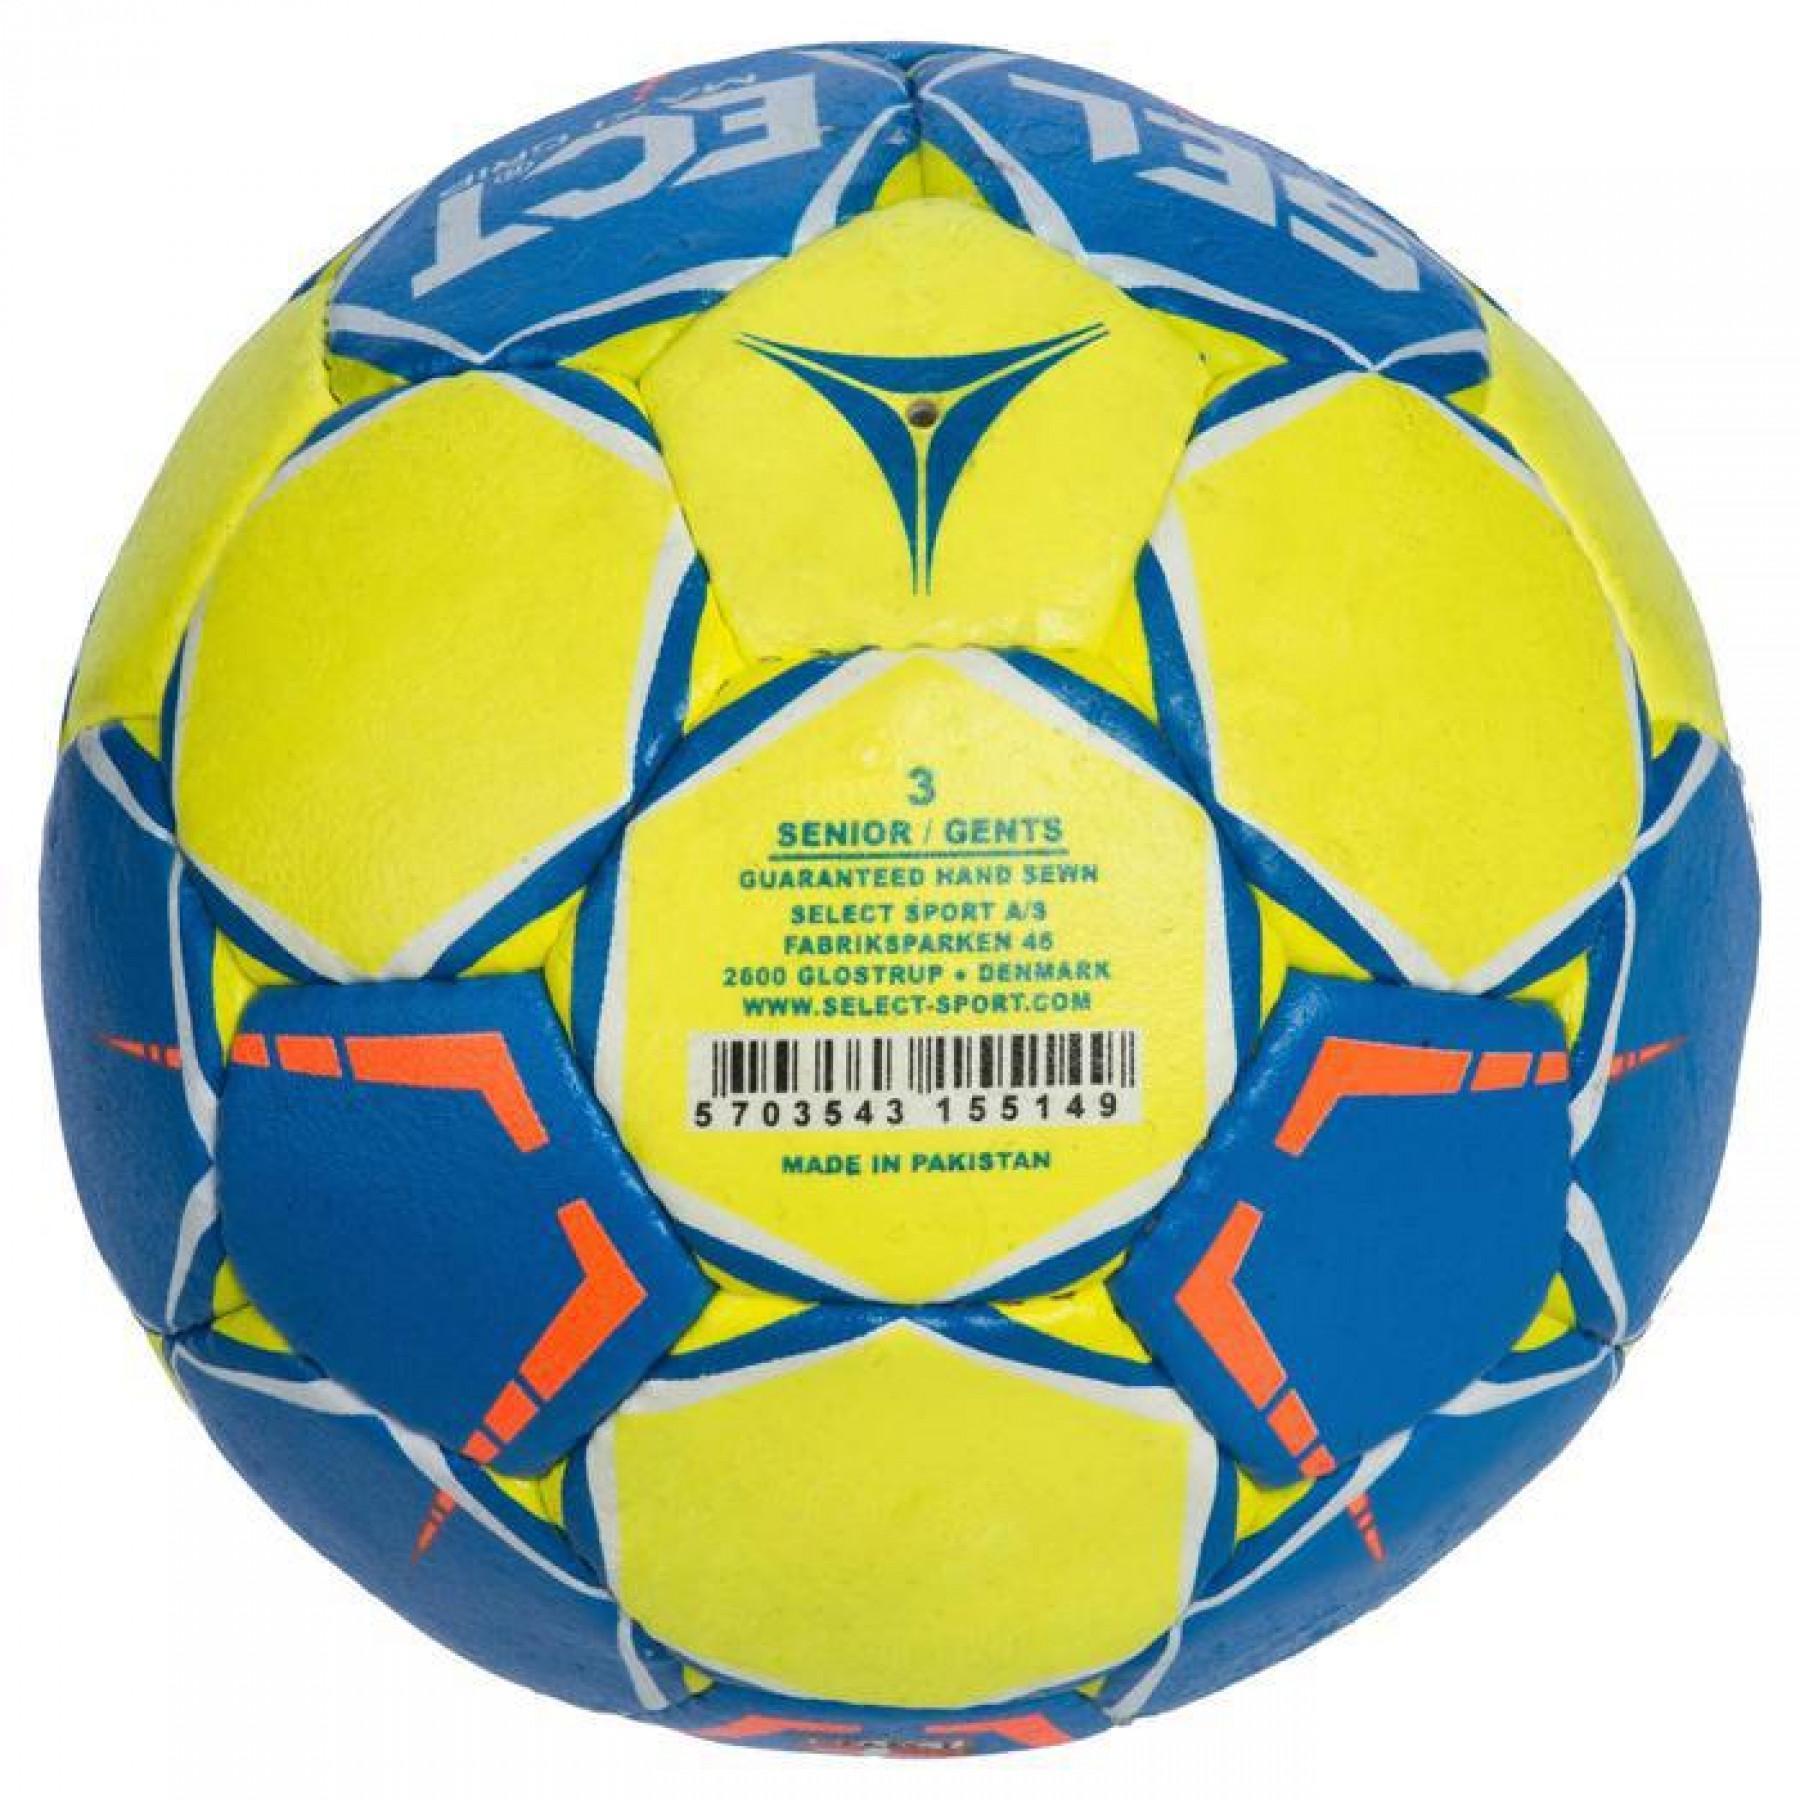 Balón Select Maxi Grip